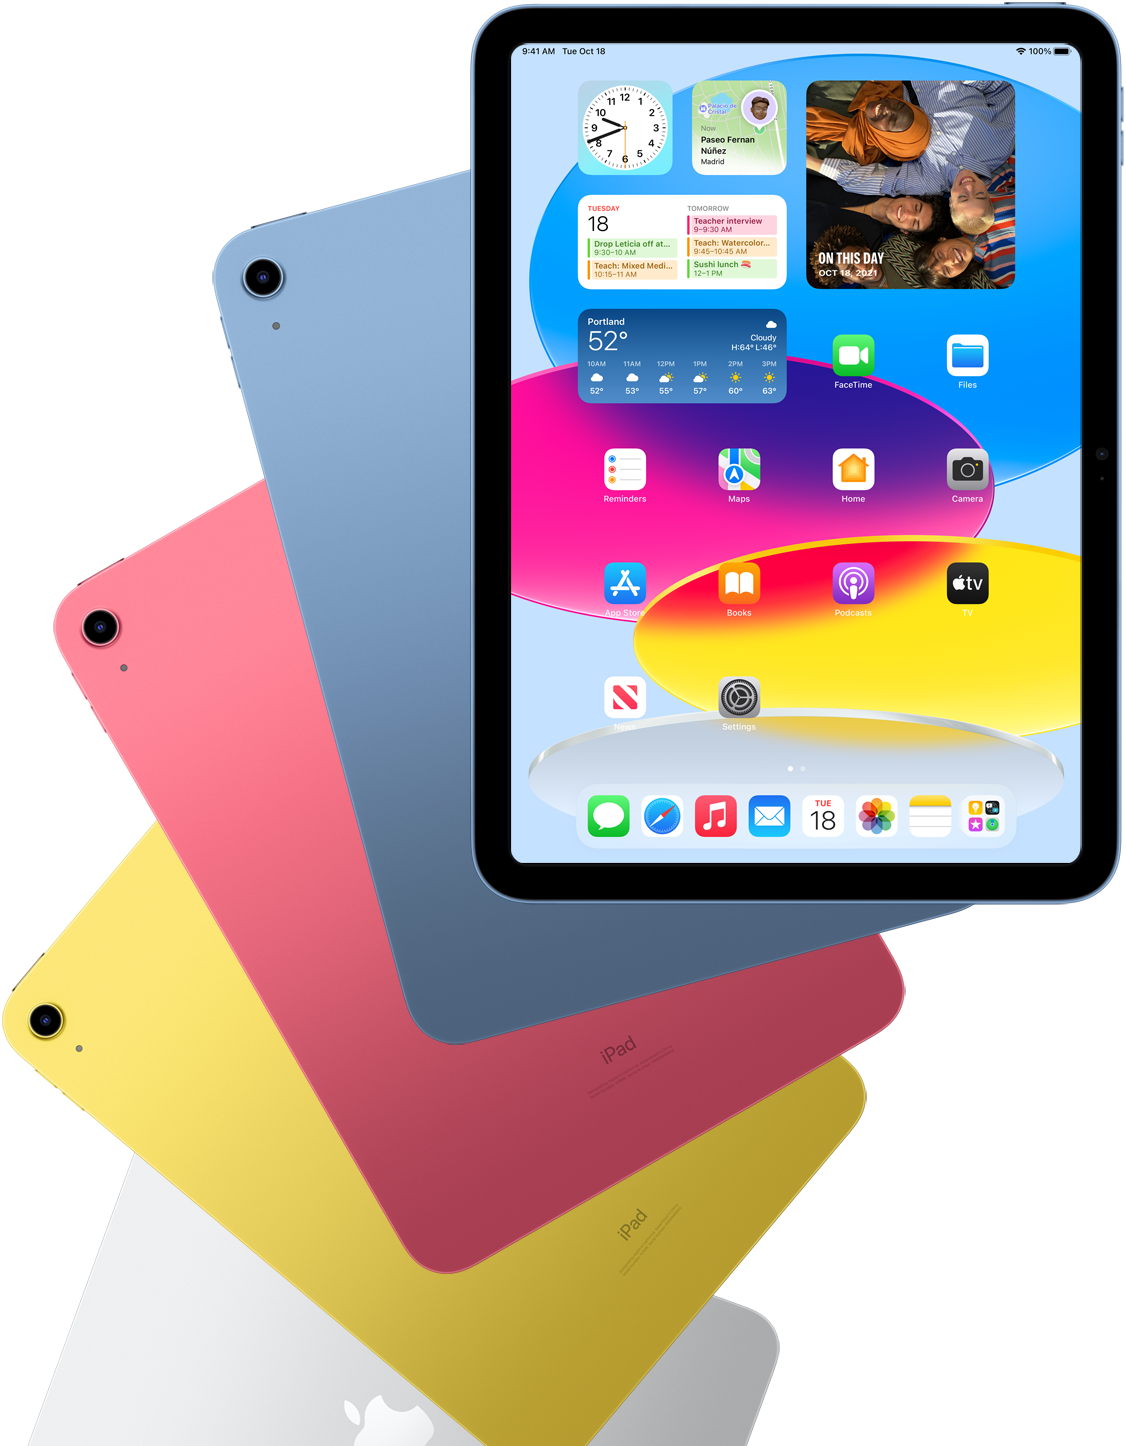 يعرض Ipad ذو الرؤية الأمامية الشاشة الرئيسية مع أجهزة Ipad الخلفية ذات اللون الأزرق والوردي والأصفر والفضي خلفه.